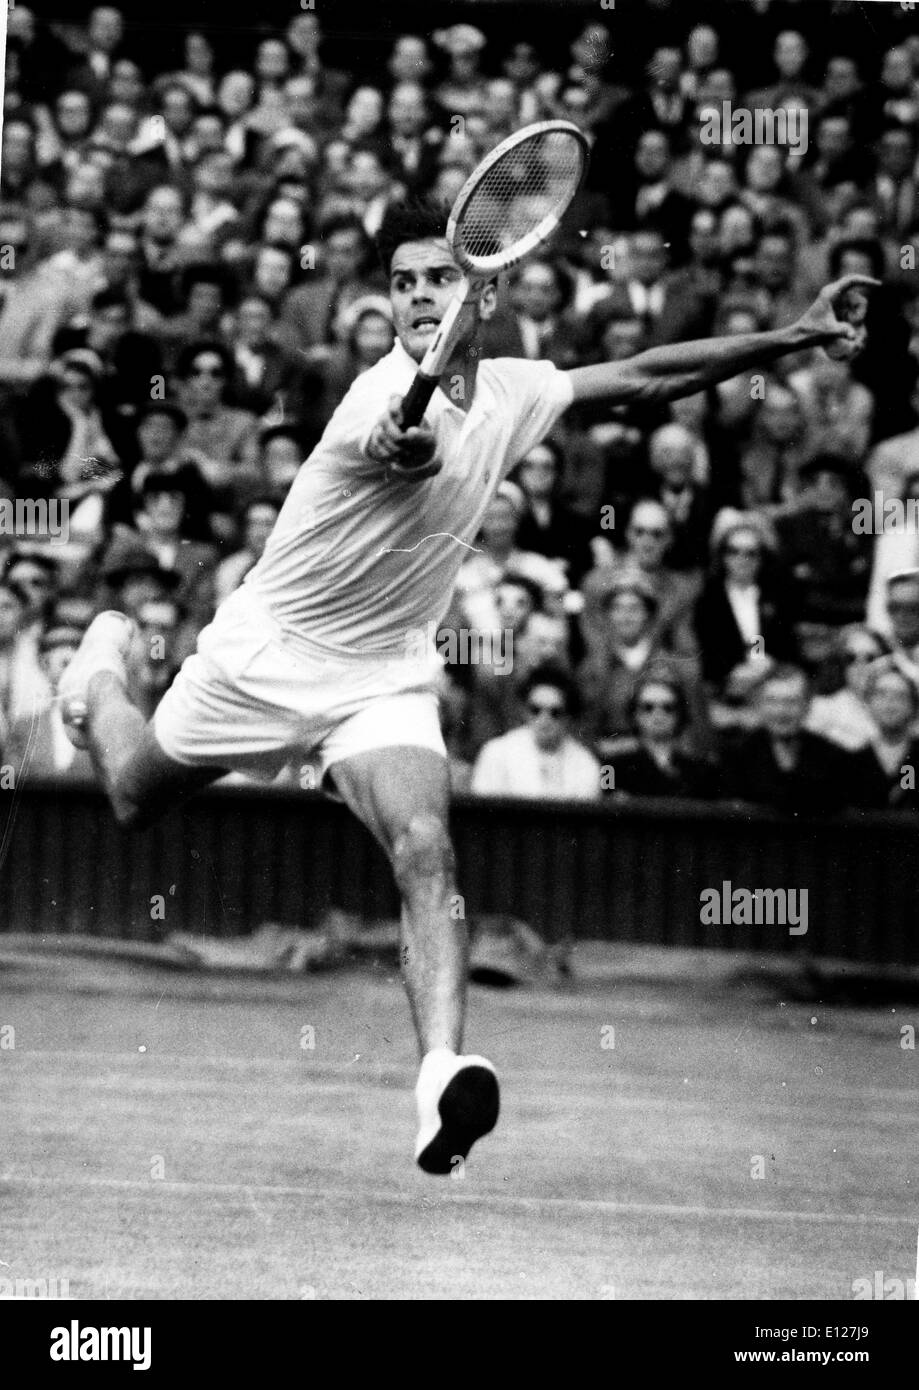 Apr 01, 2009 - Londra, Inghilterra, Regno Unito - SVEN DAVIDSON 13 luglio 1928 Ð 28 maggio 2008 è stato svedese del giocatore di tennis. Nel 1957 Foto Stock